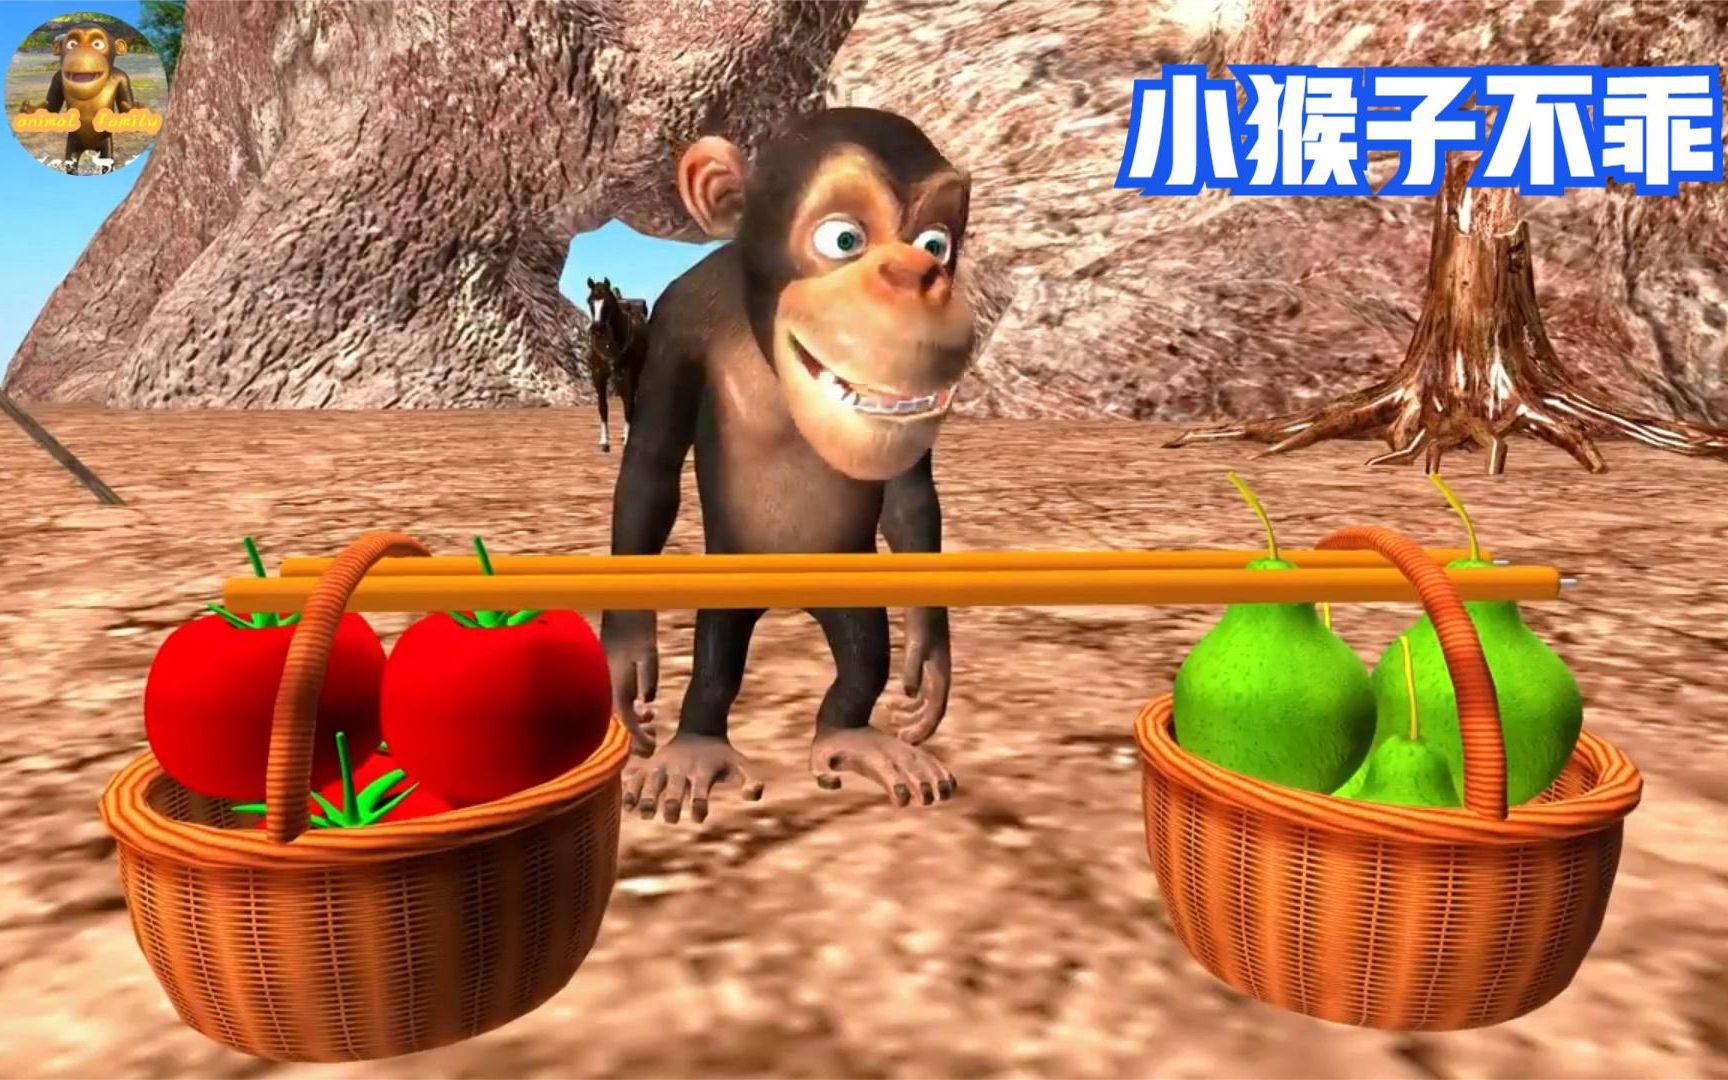 動物園響應惜食行動 「這蔬果」最受黑猩猩歡迎 - 奧丁丁新聞 OwlNews